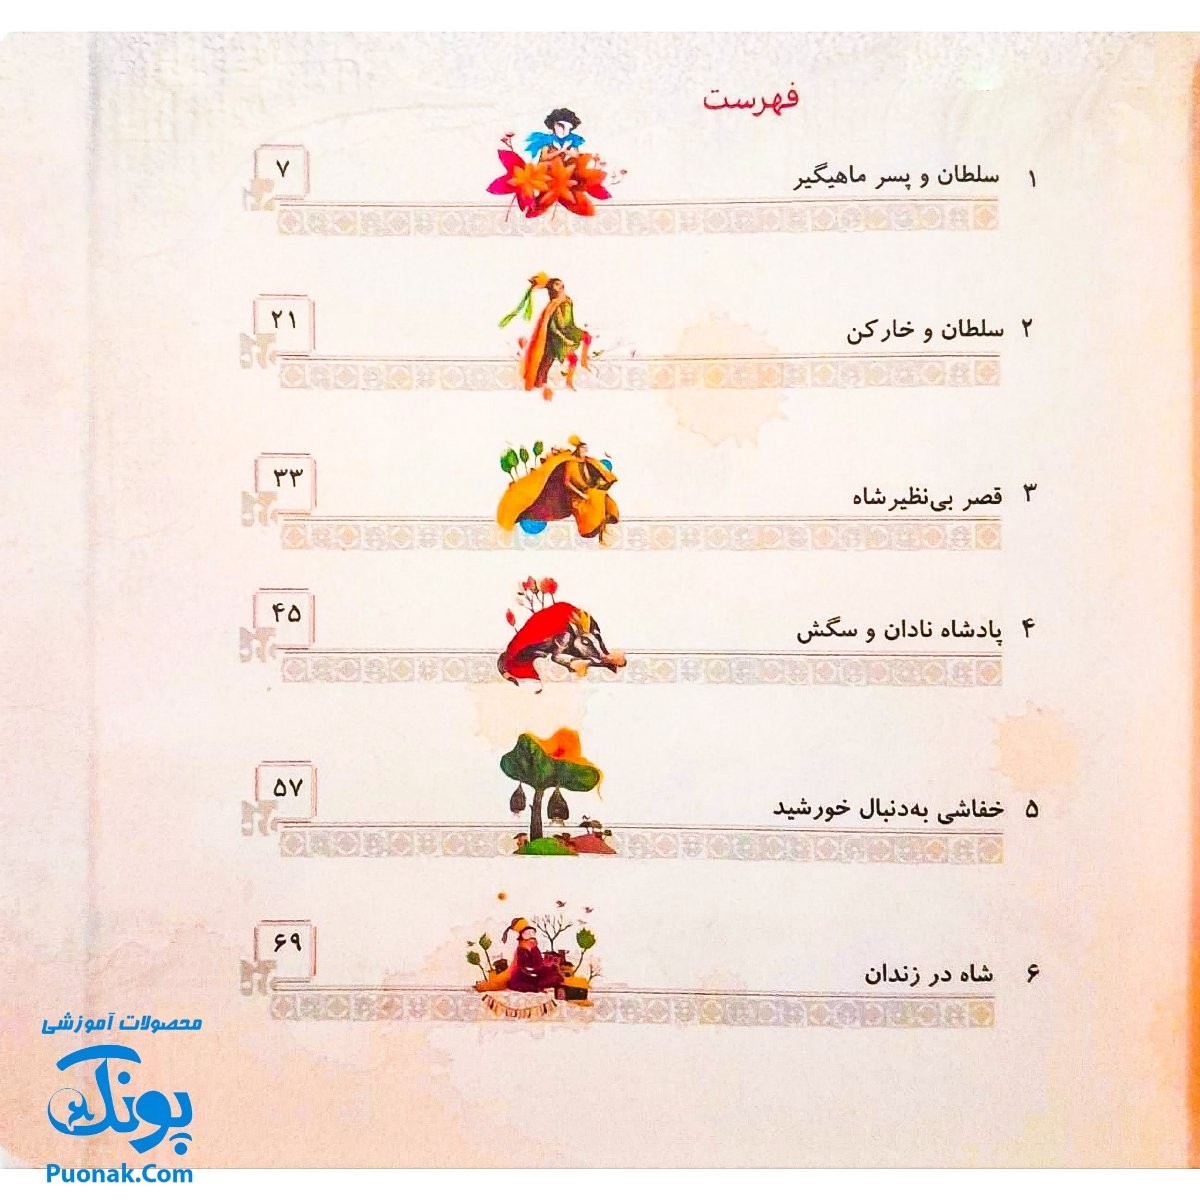 کتاب مجموعه قصه های قشنگ قدیمی جلد ۱۲ دوازدهم ۱۲ قصه از منطق الطیر عطار نیشابوری